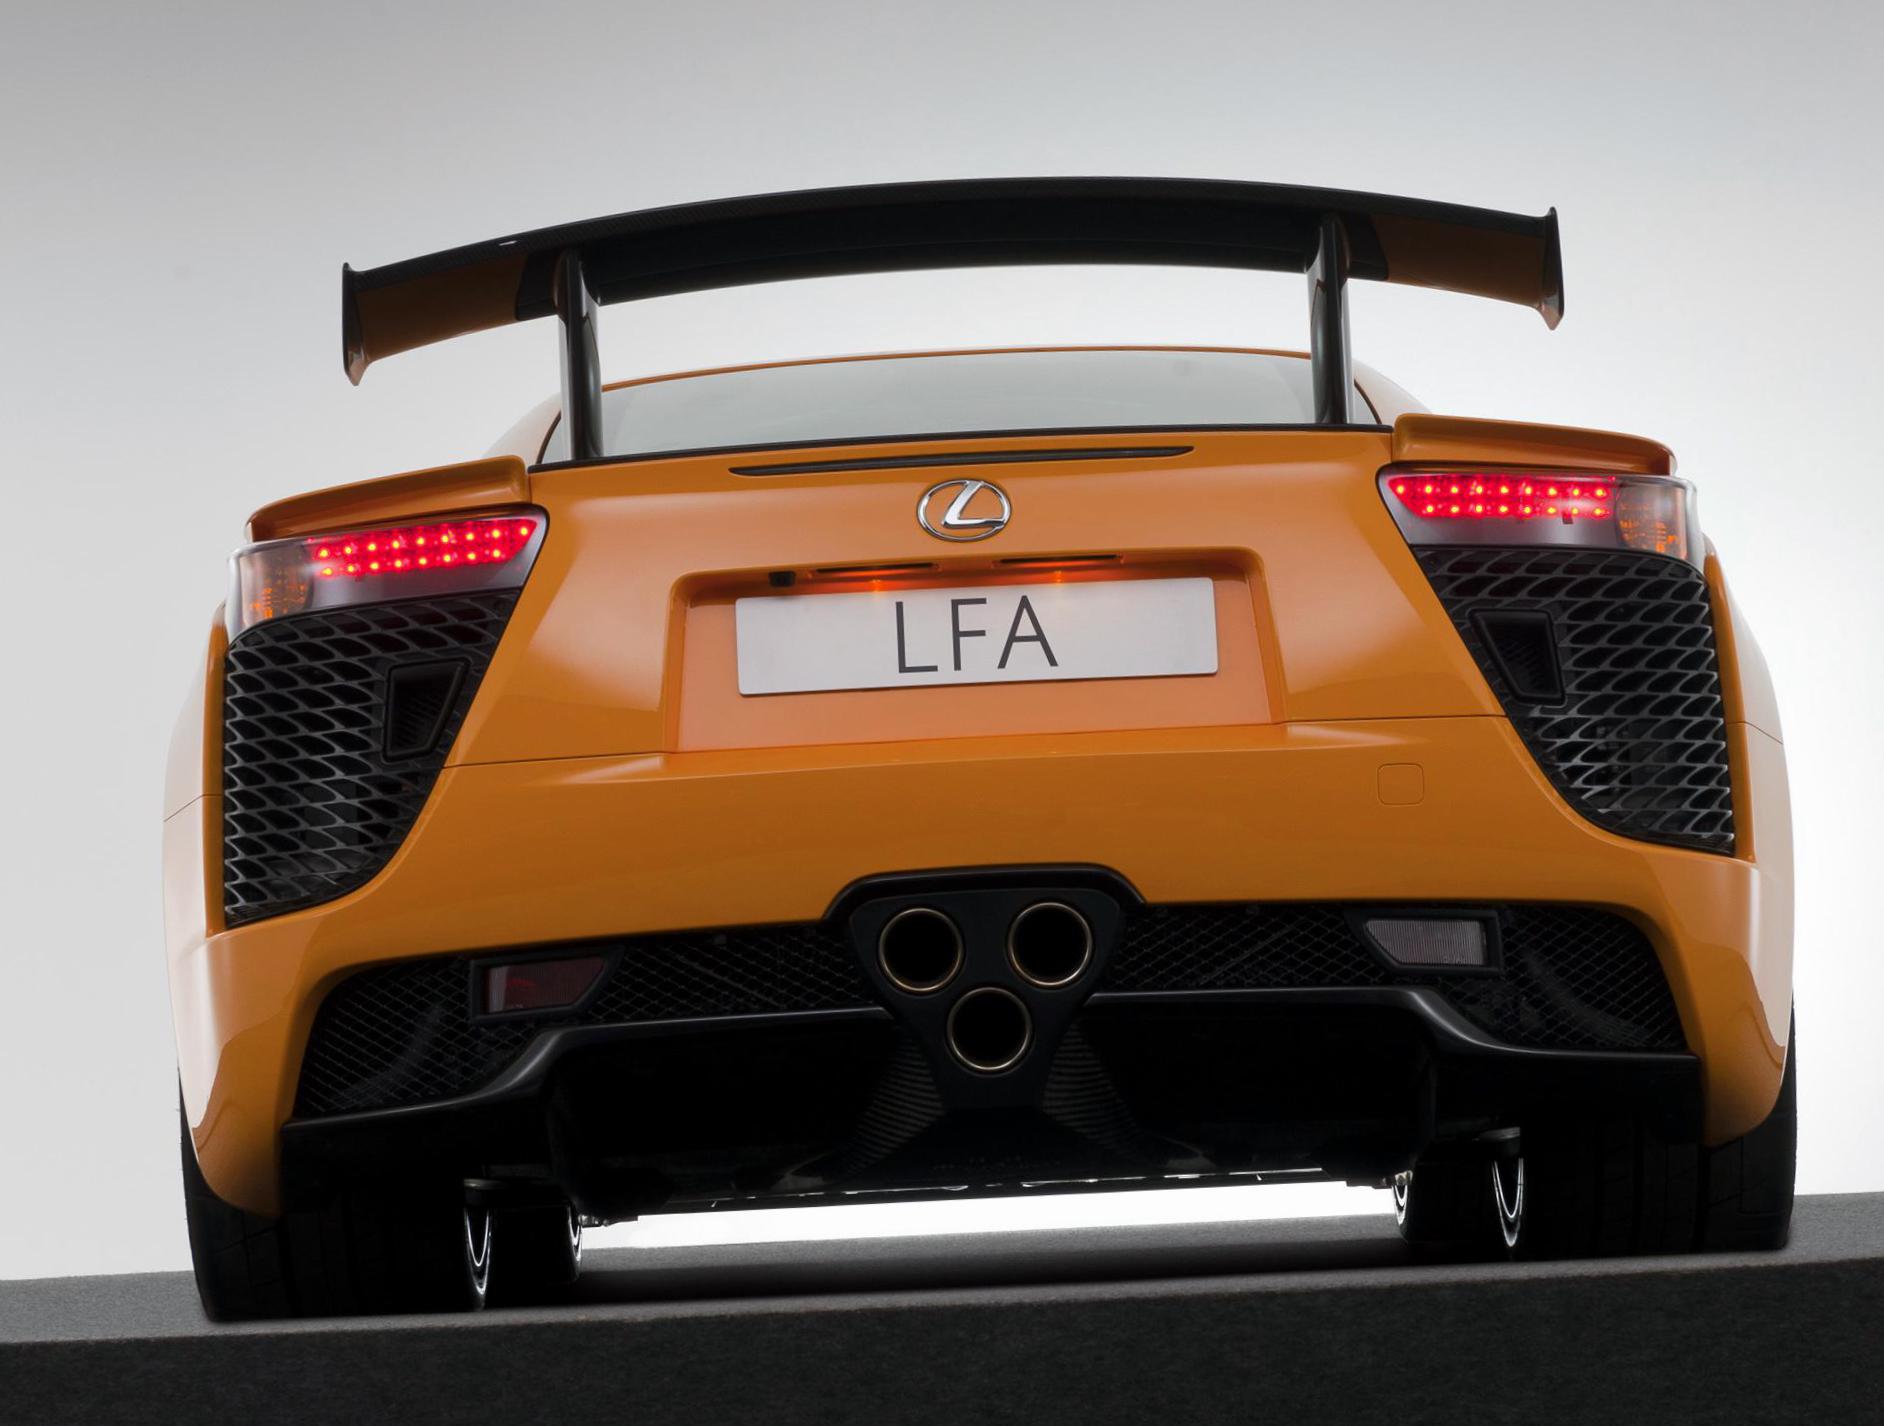 Lexus LFA tuning suv